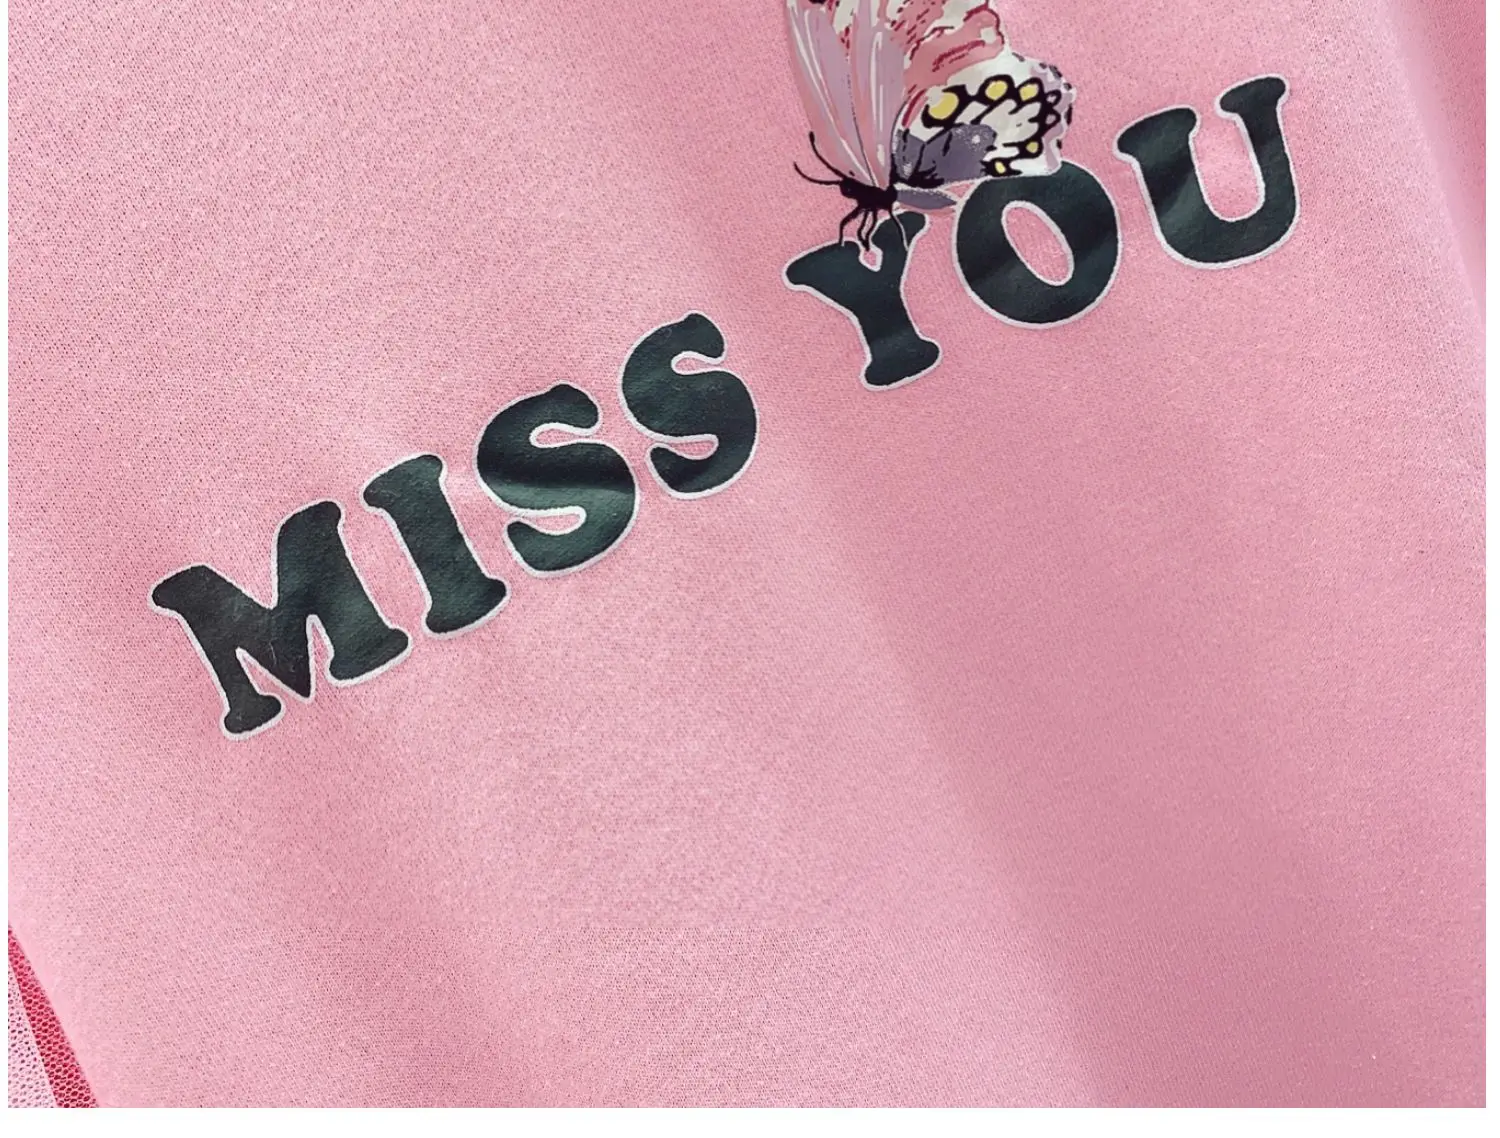 Осень 2019, Свободный пуловер, свитшоты для женщин, новый корейский круглый вырез, простая рубашка с буквенным принтом, студенческие розовые